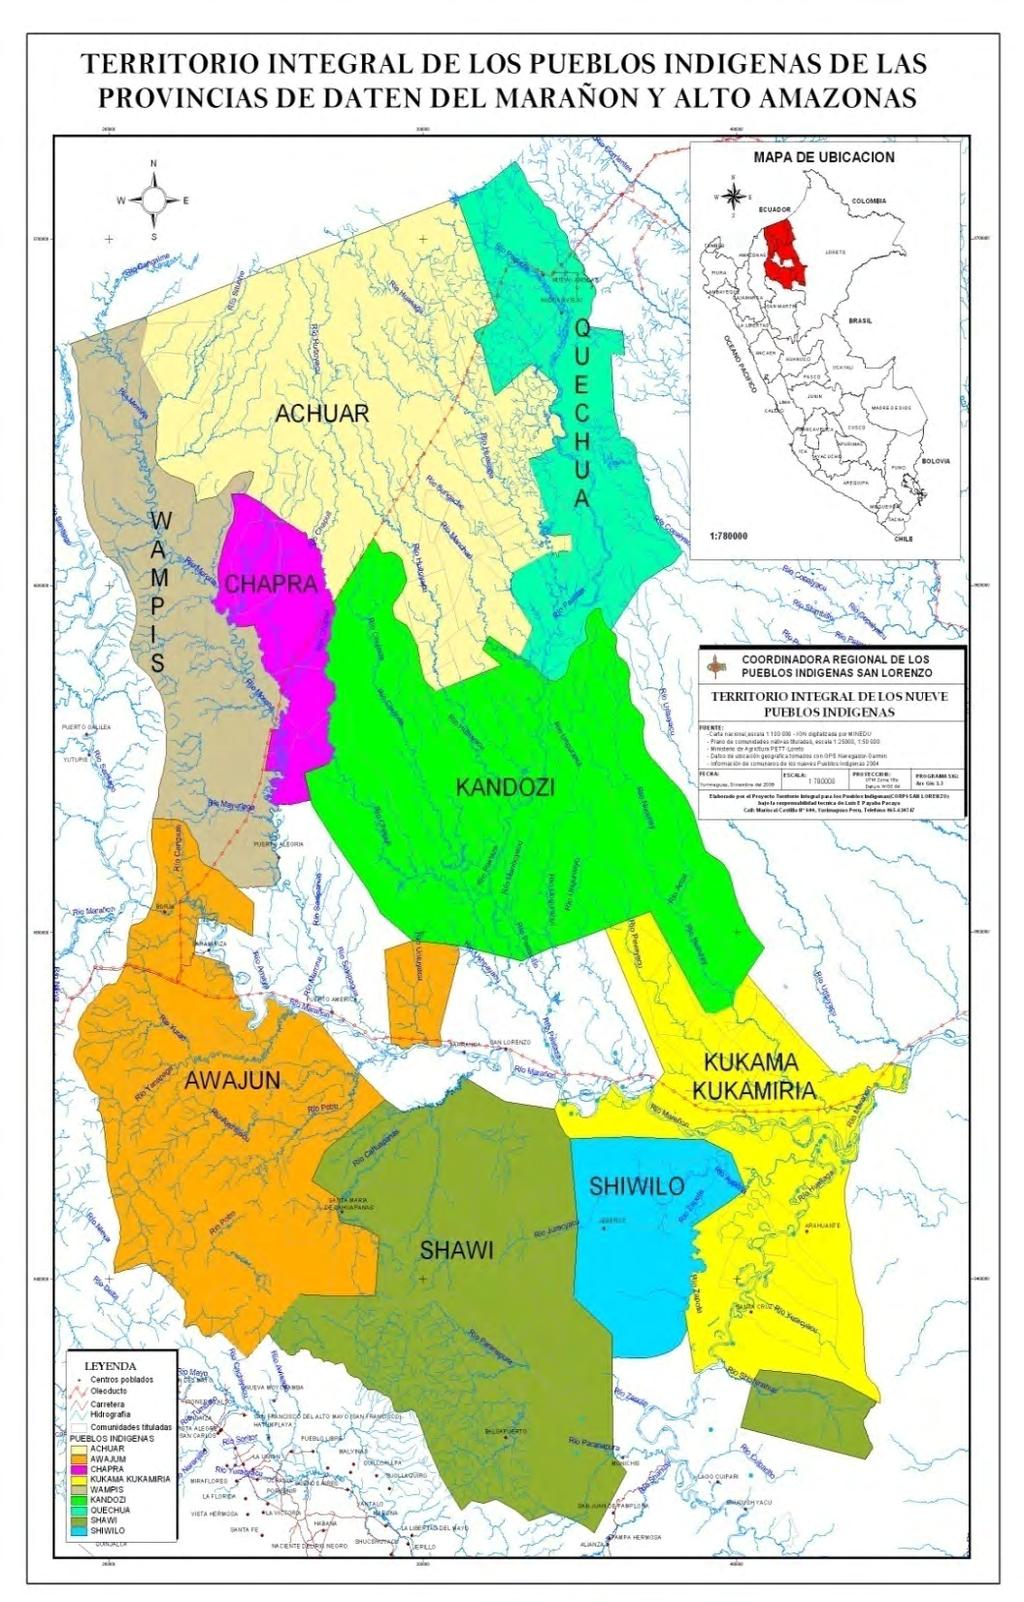 Pueblo indígena kukama-kukamiria Demanda territorial al Estado Peruano de 202,381 Has. De los cuales 142,334 Has. Están tituladas y distribuidas en 20 comunidades indigenas.